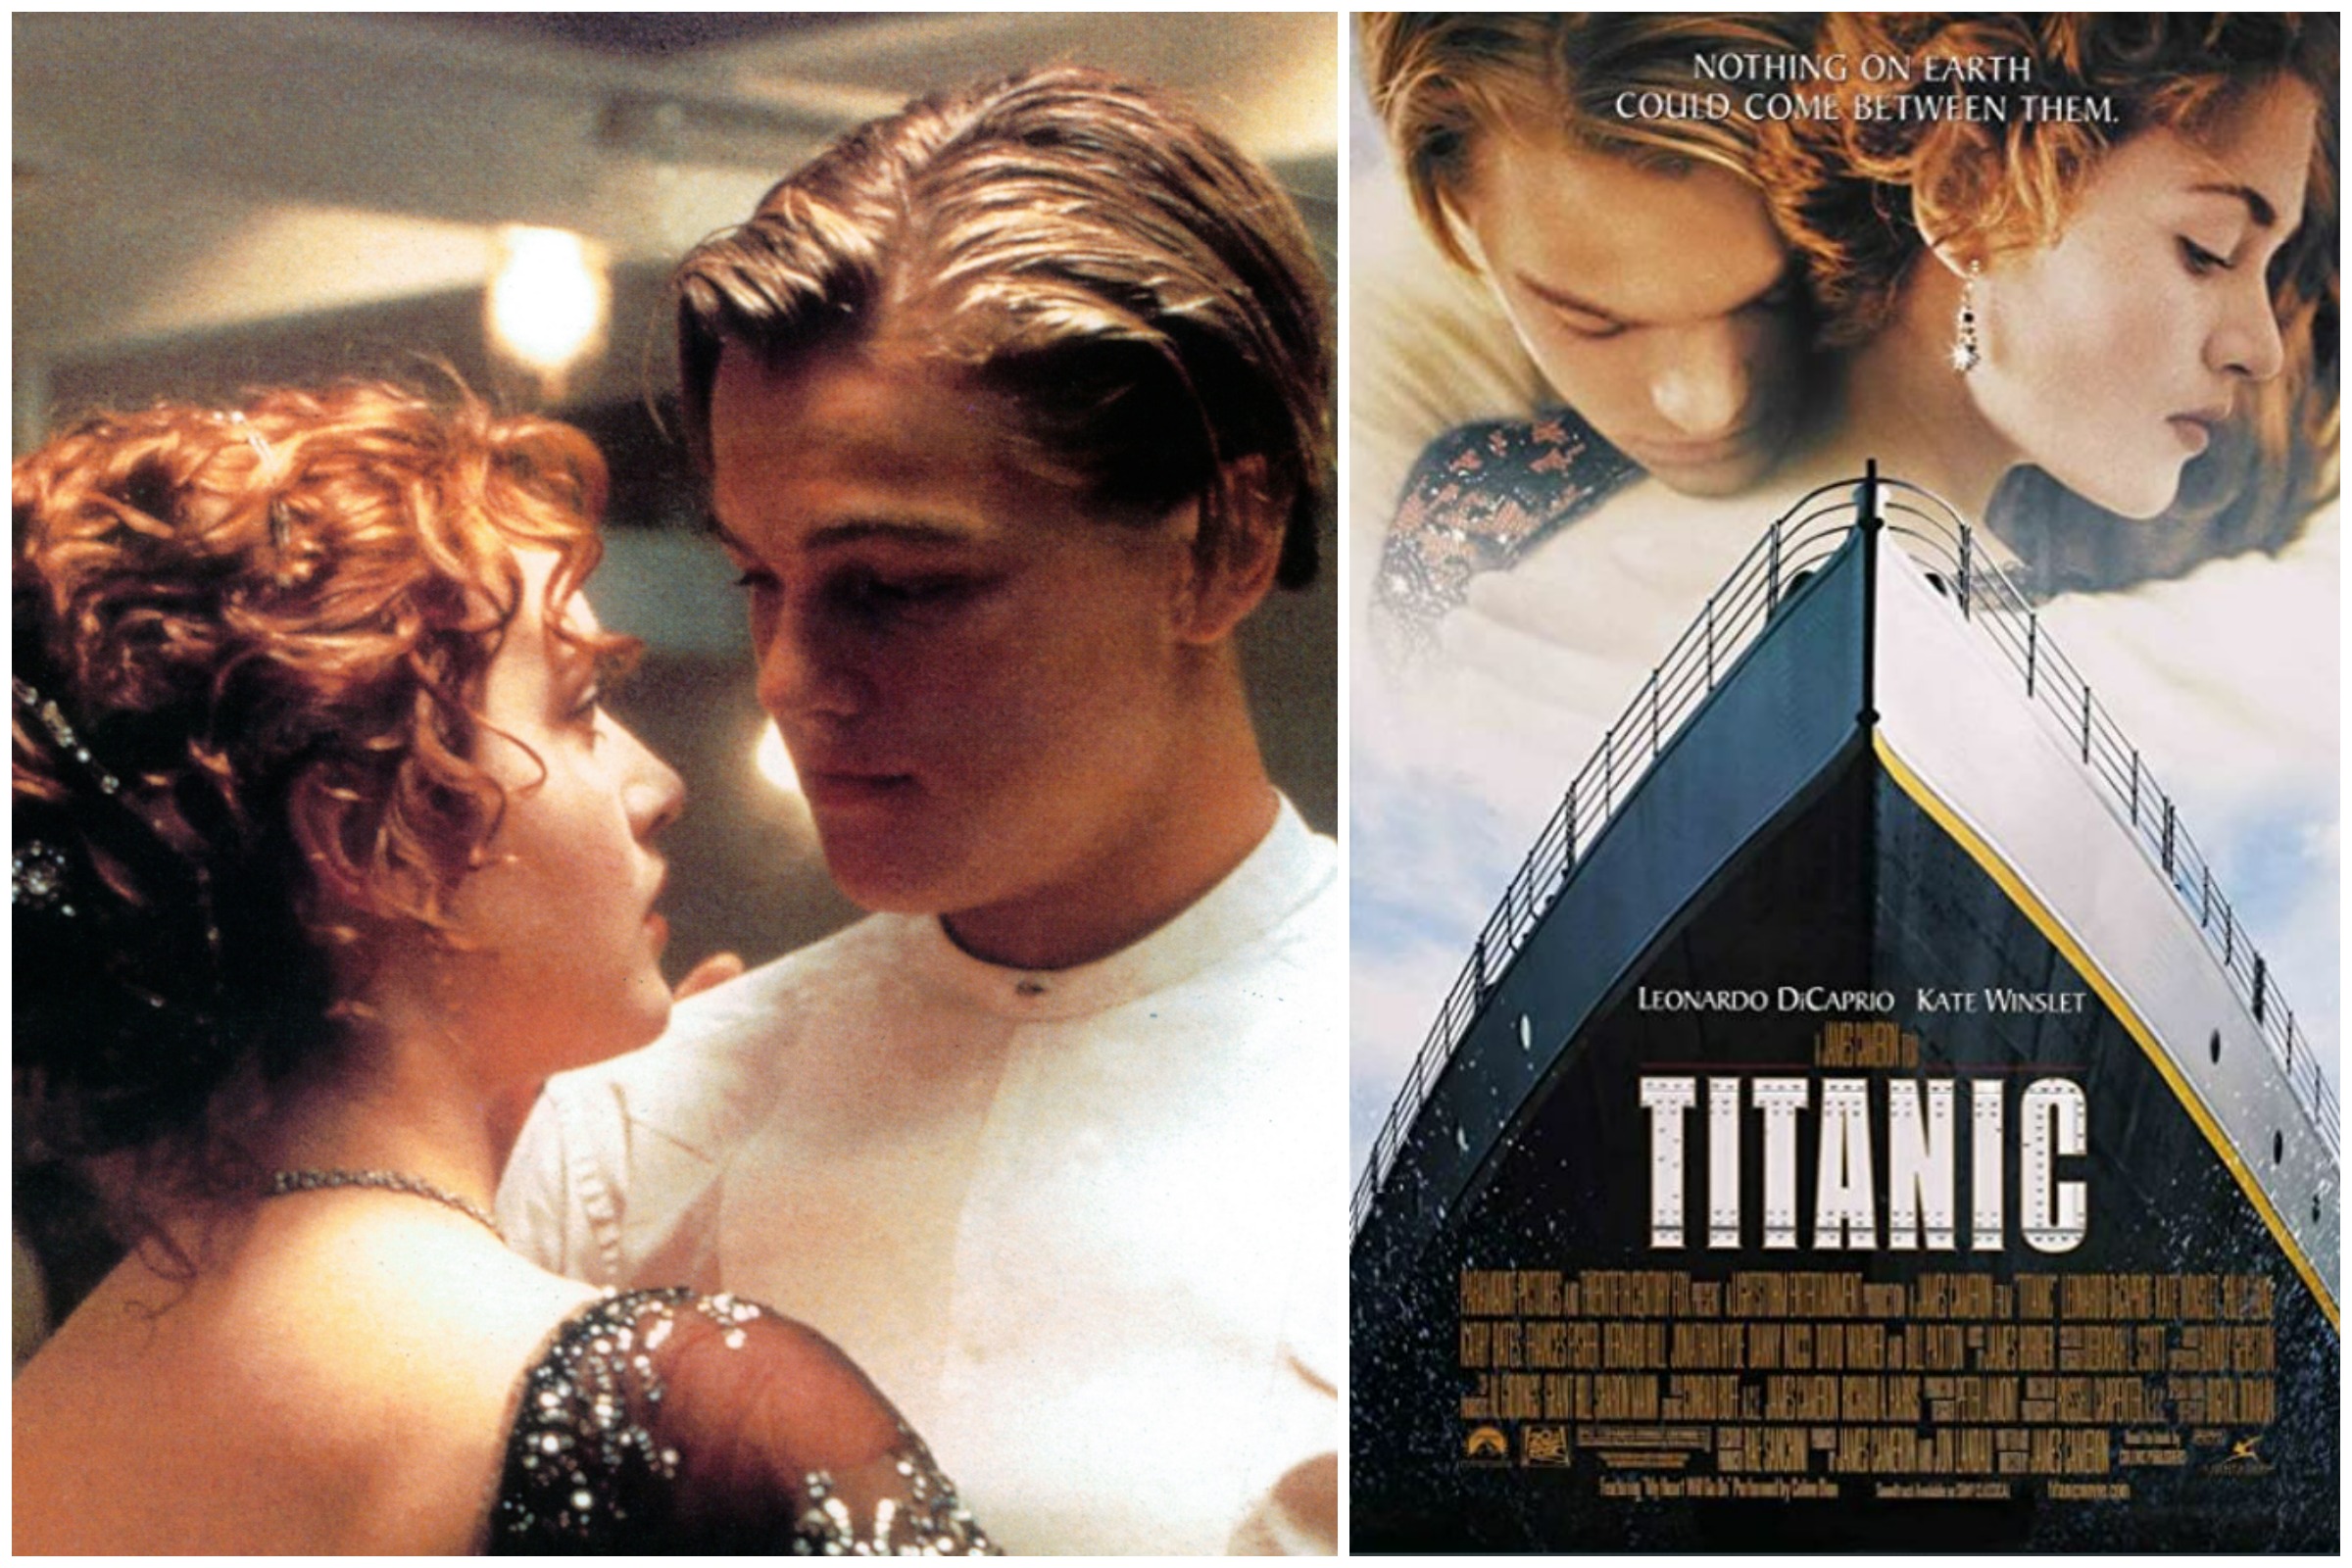 Titanic's' Infamous Jack Door Debate Reignites After Prop Found at Disney